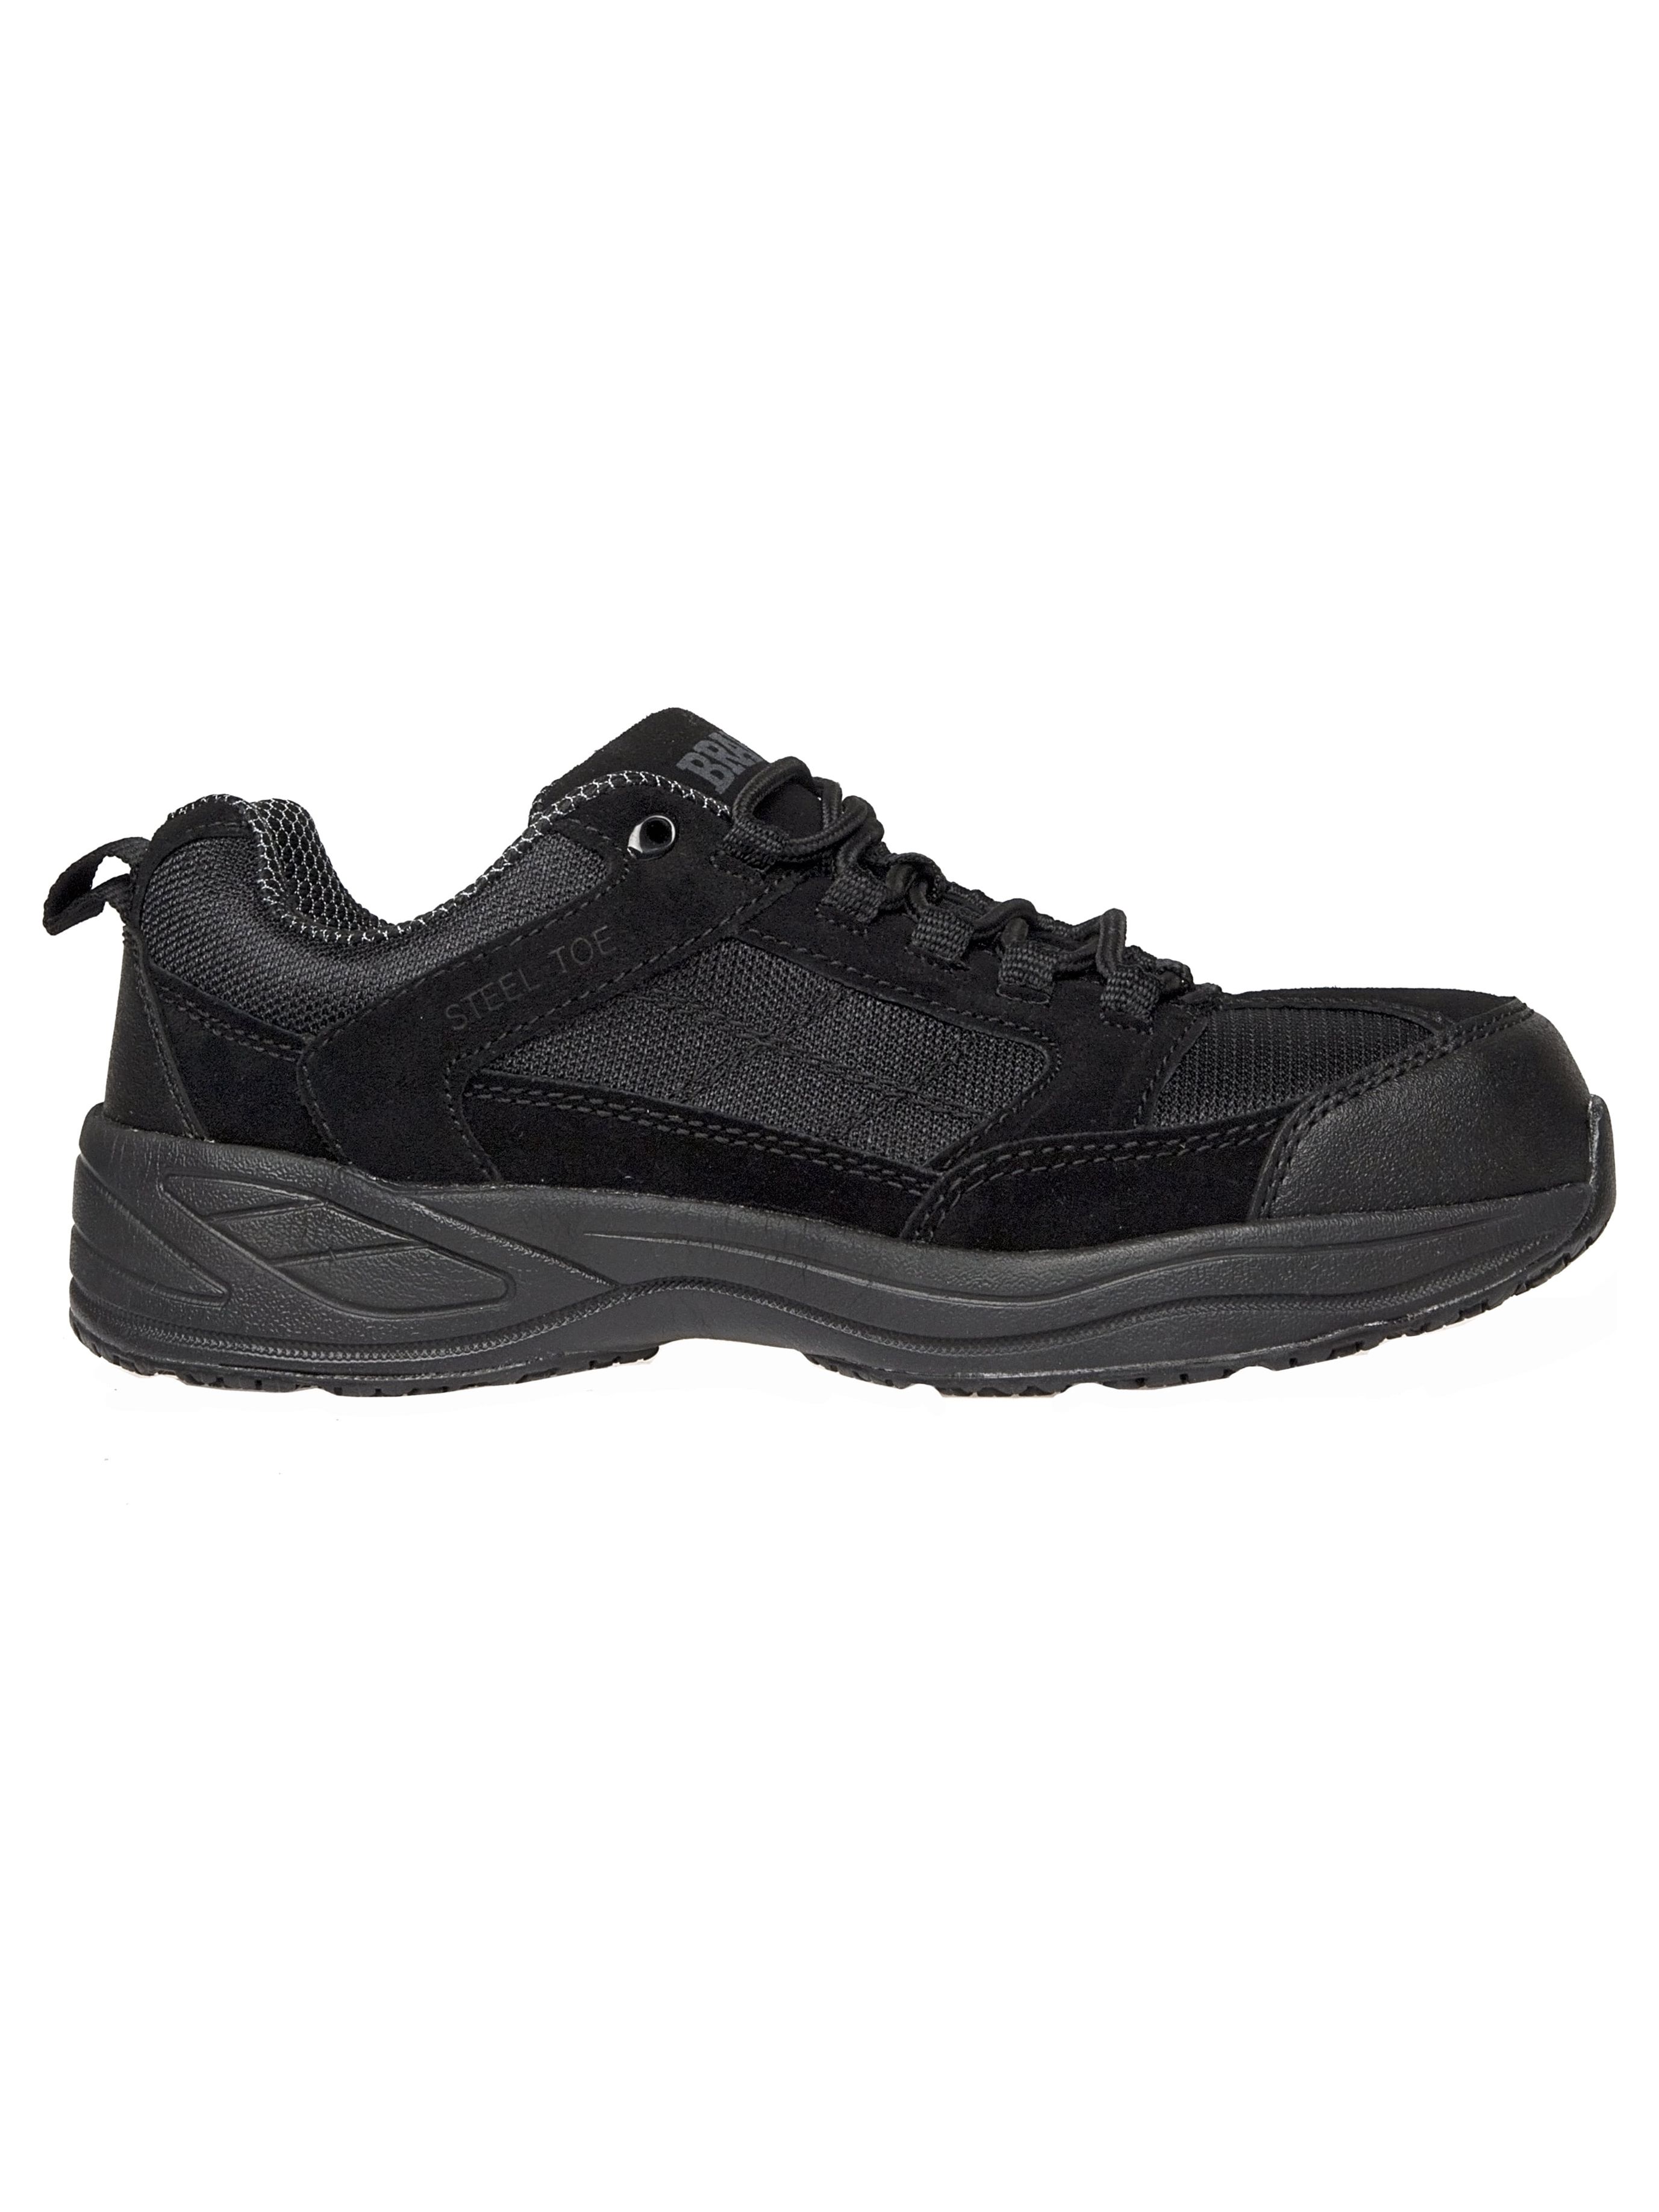 Brahma Men's Adan Steel Toe Work Shoes - image 5 of 5